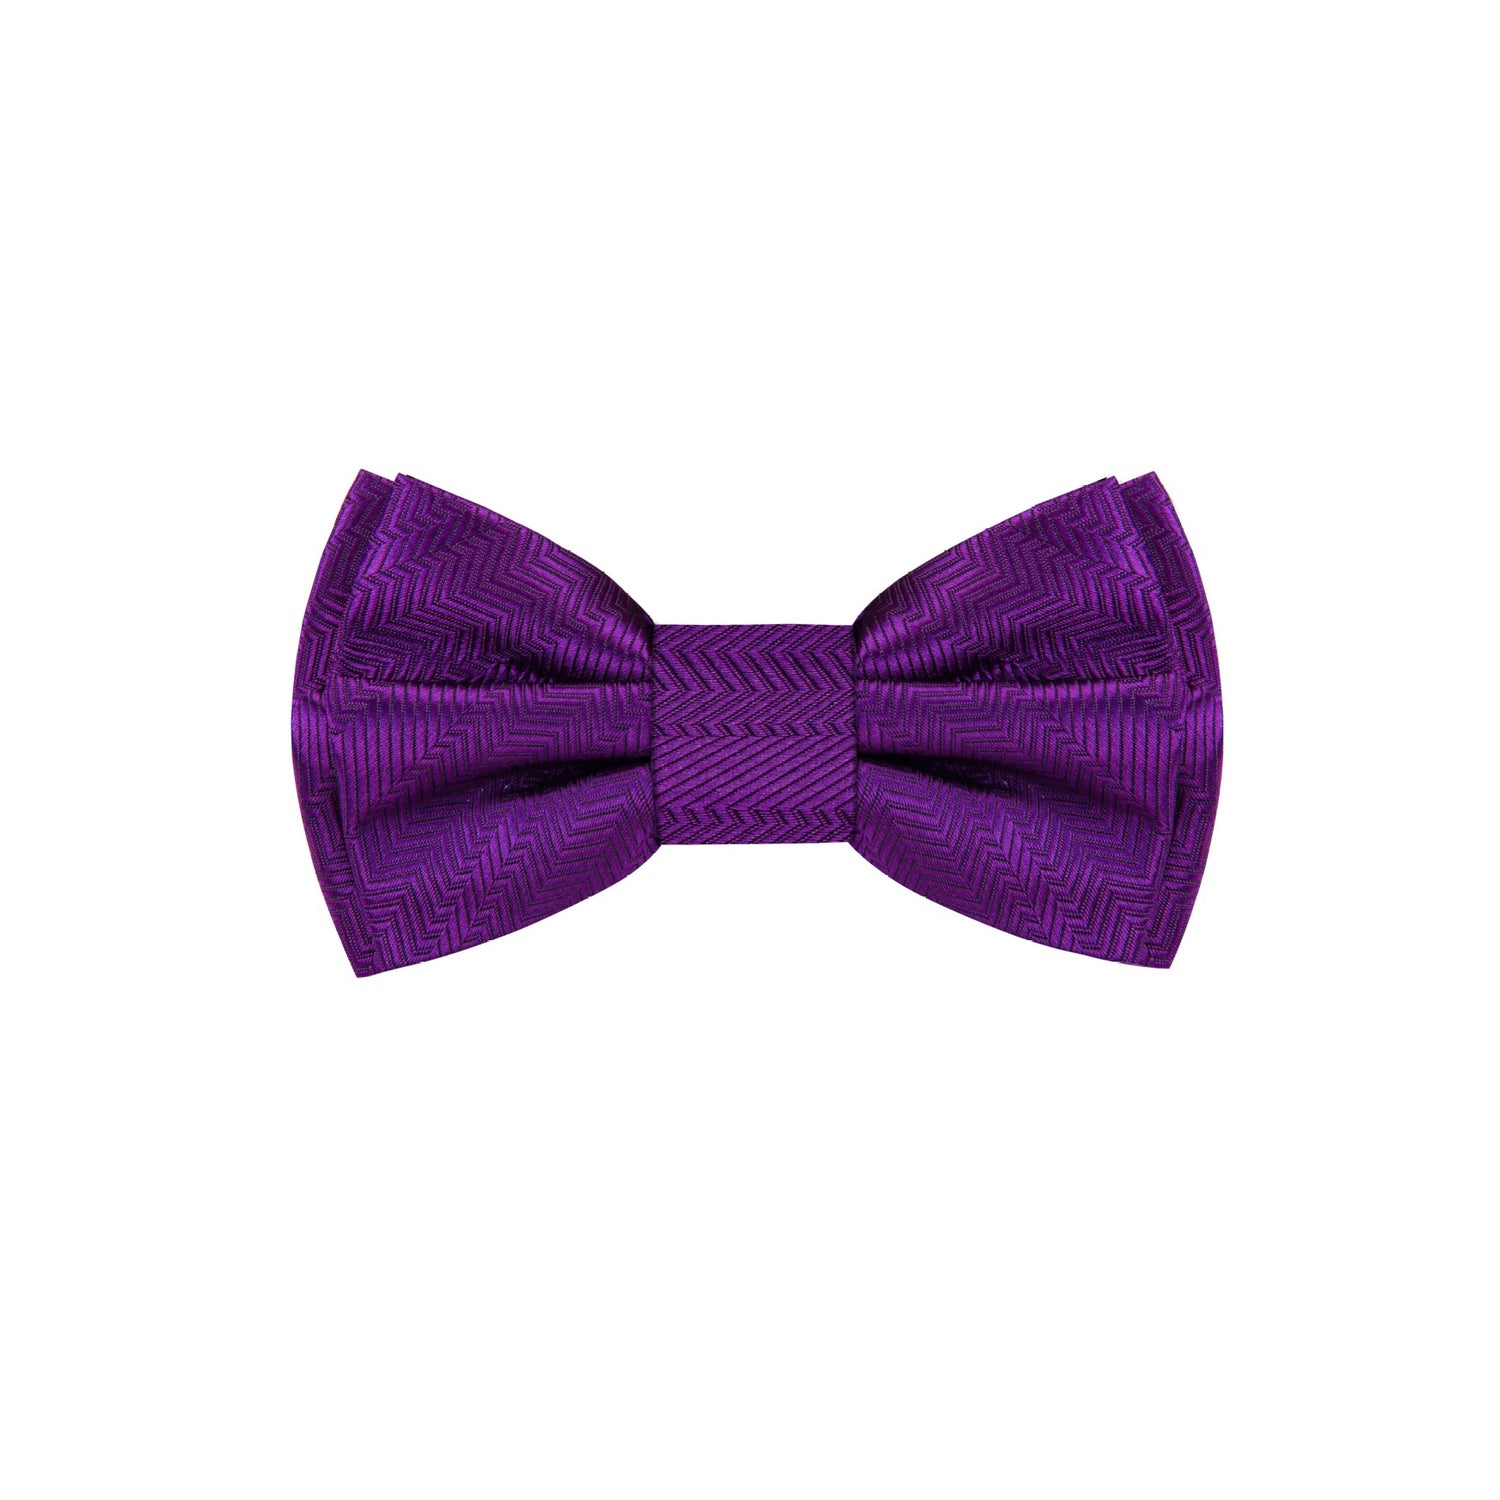 A Classy Purple Solid Pattern Self Tie Bow Tie 